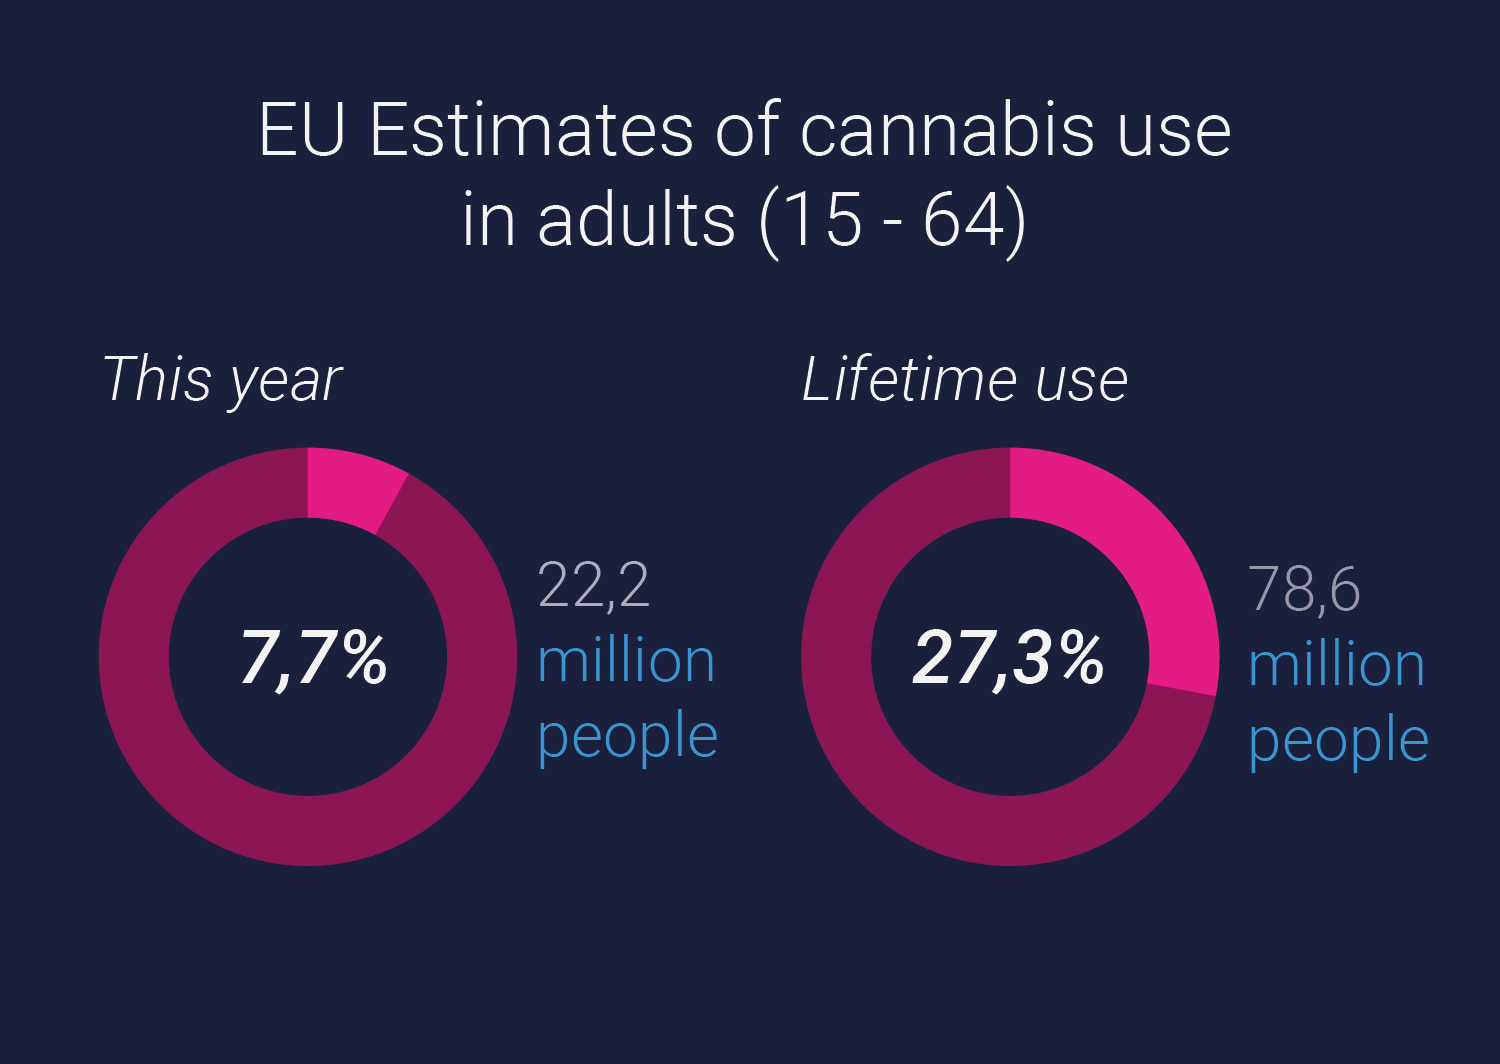 EU estimates of adult cannabis use